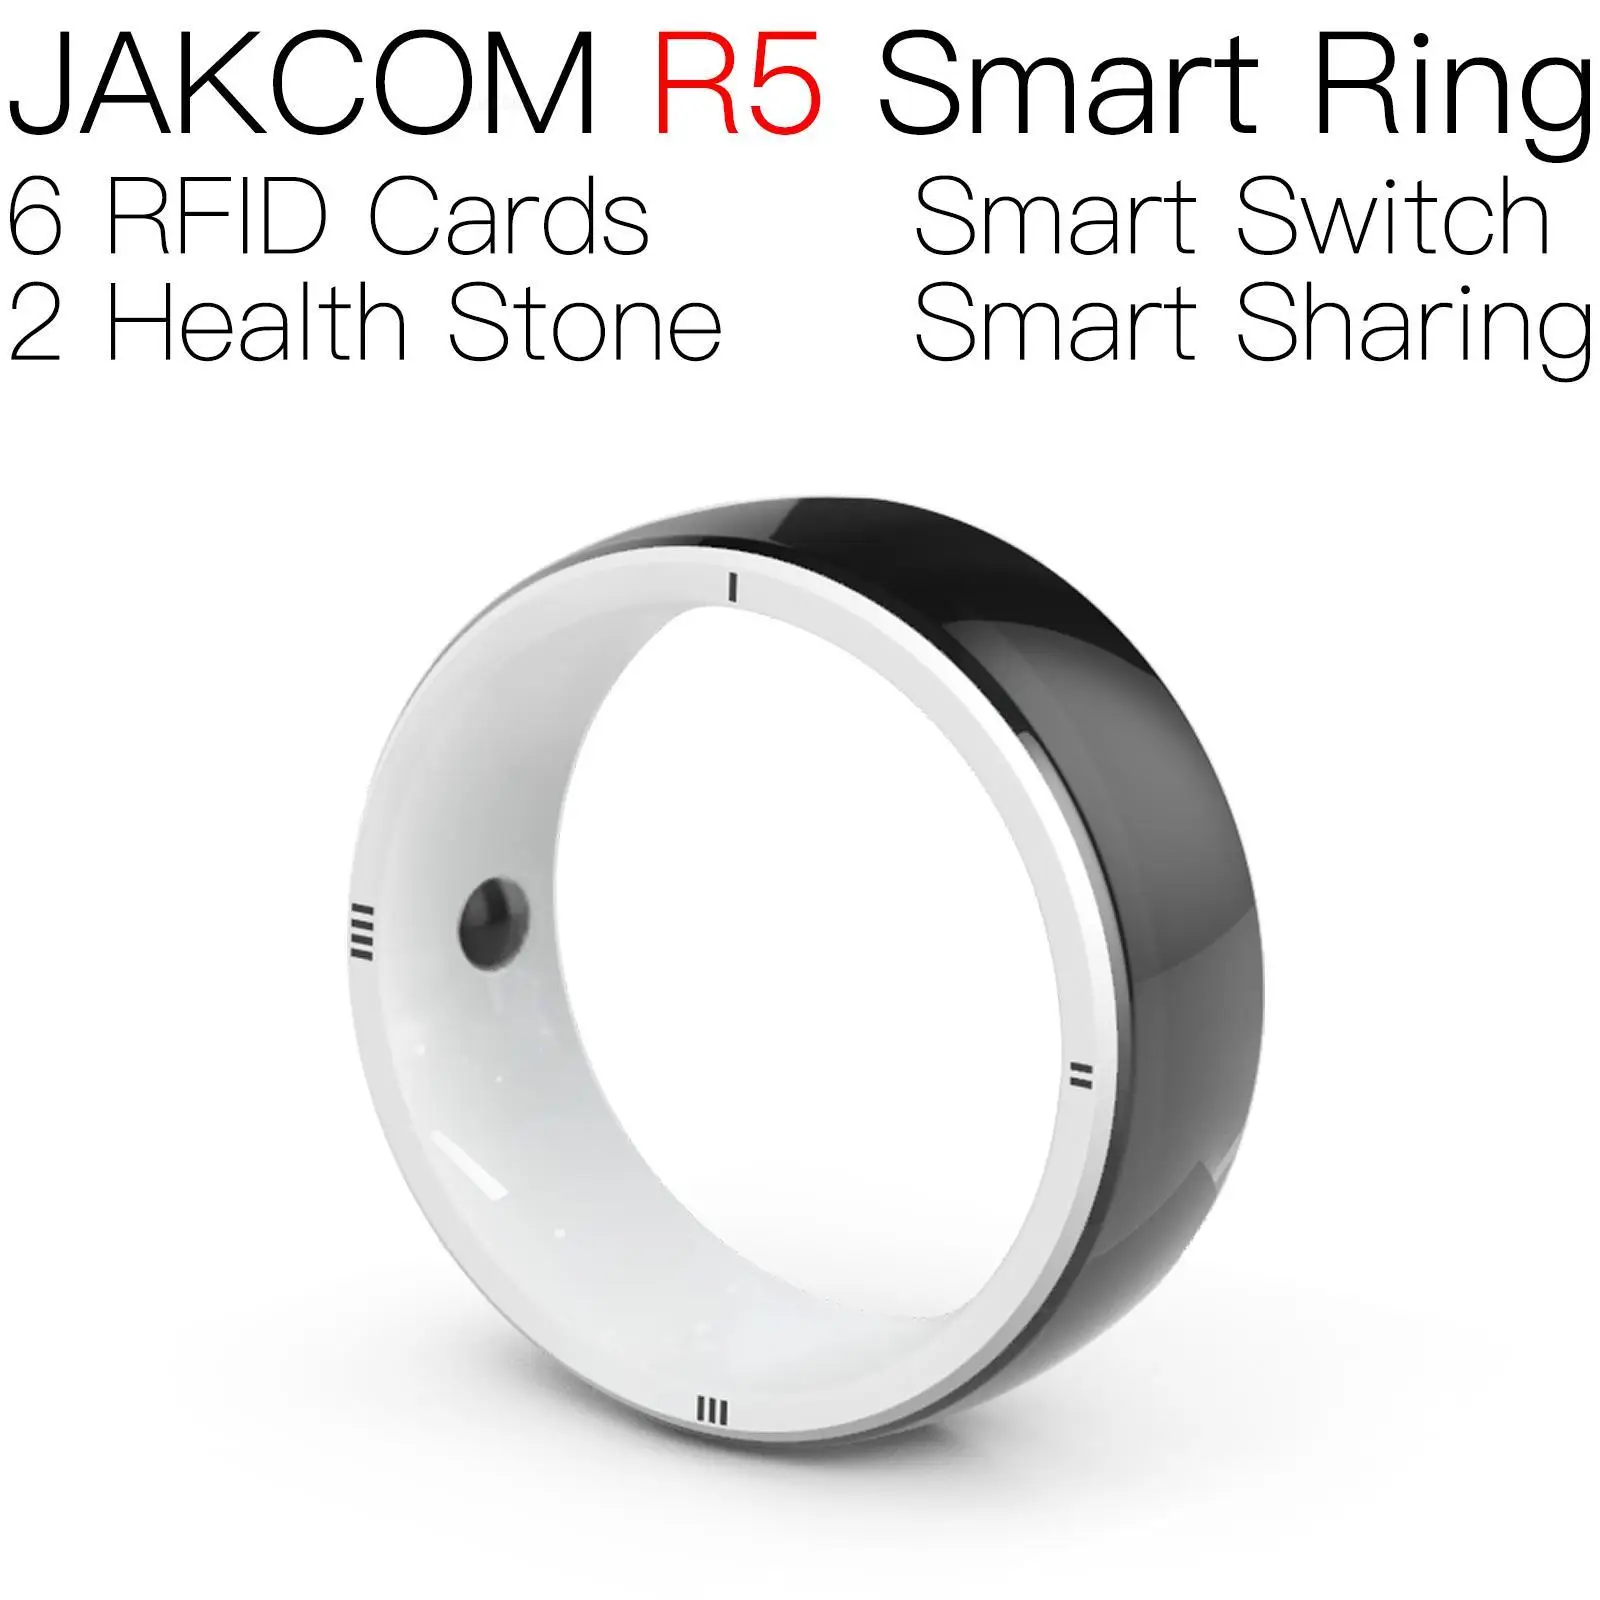 Умное кольцо JAKCOM R5, новее, чем magstripe ad2015e, электронные использованные телефоны, эргономичная копия транспортировки, антиметаллическая эпоксидная новая бирка с именем собаки 55